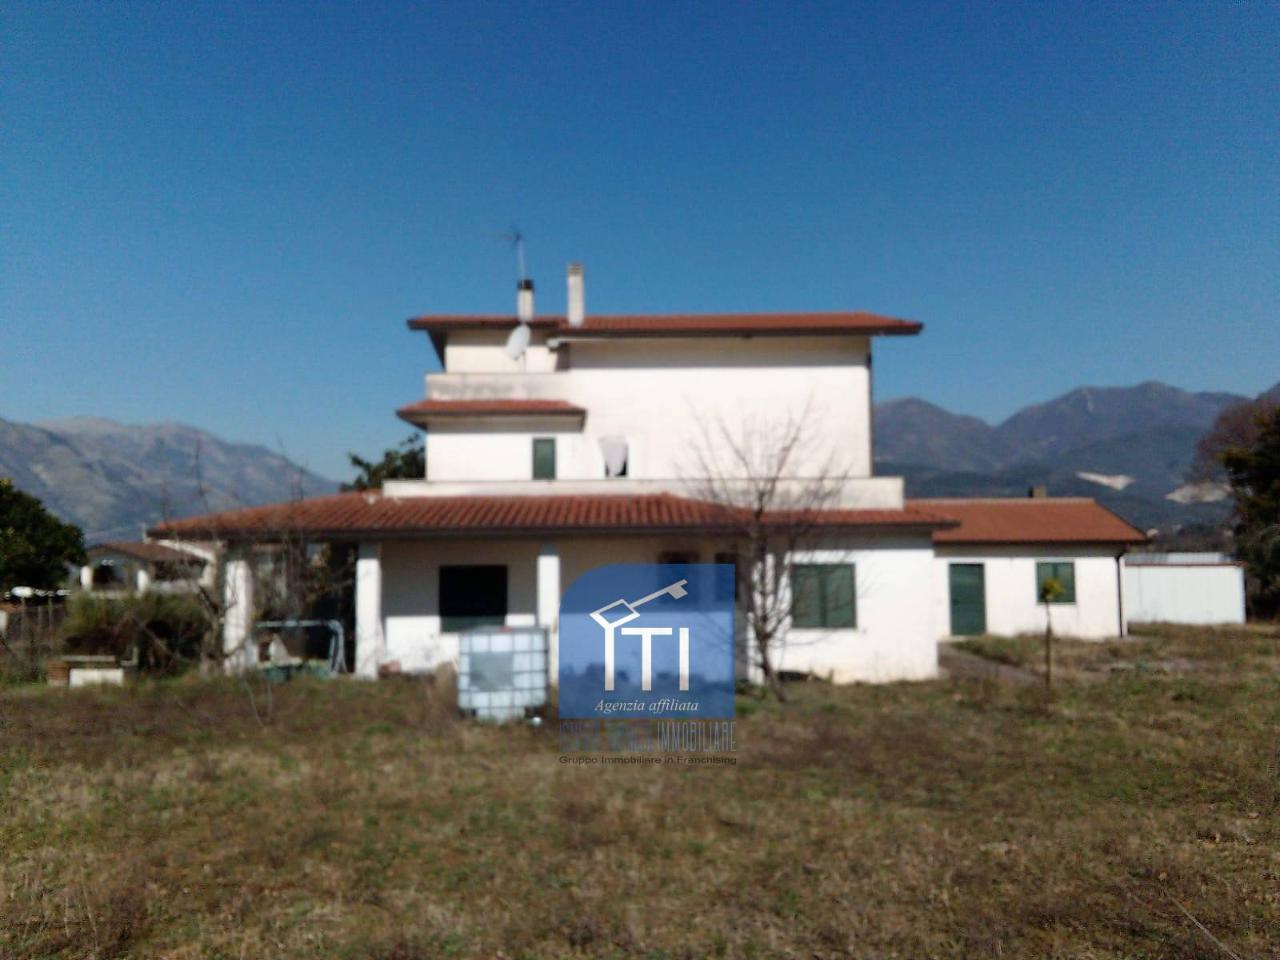 Villa in vendita a Sant'Elia Fiumerapido